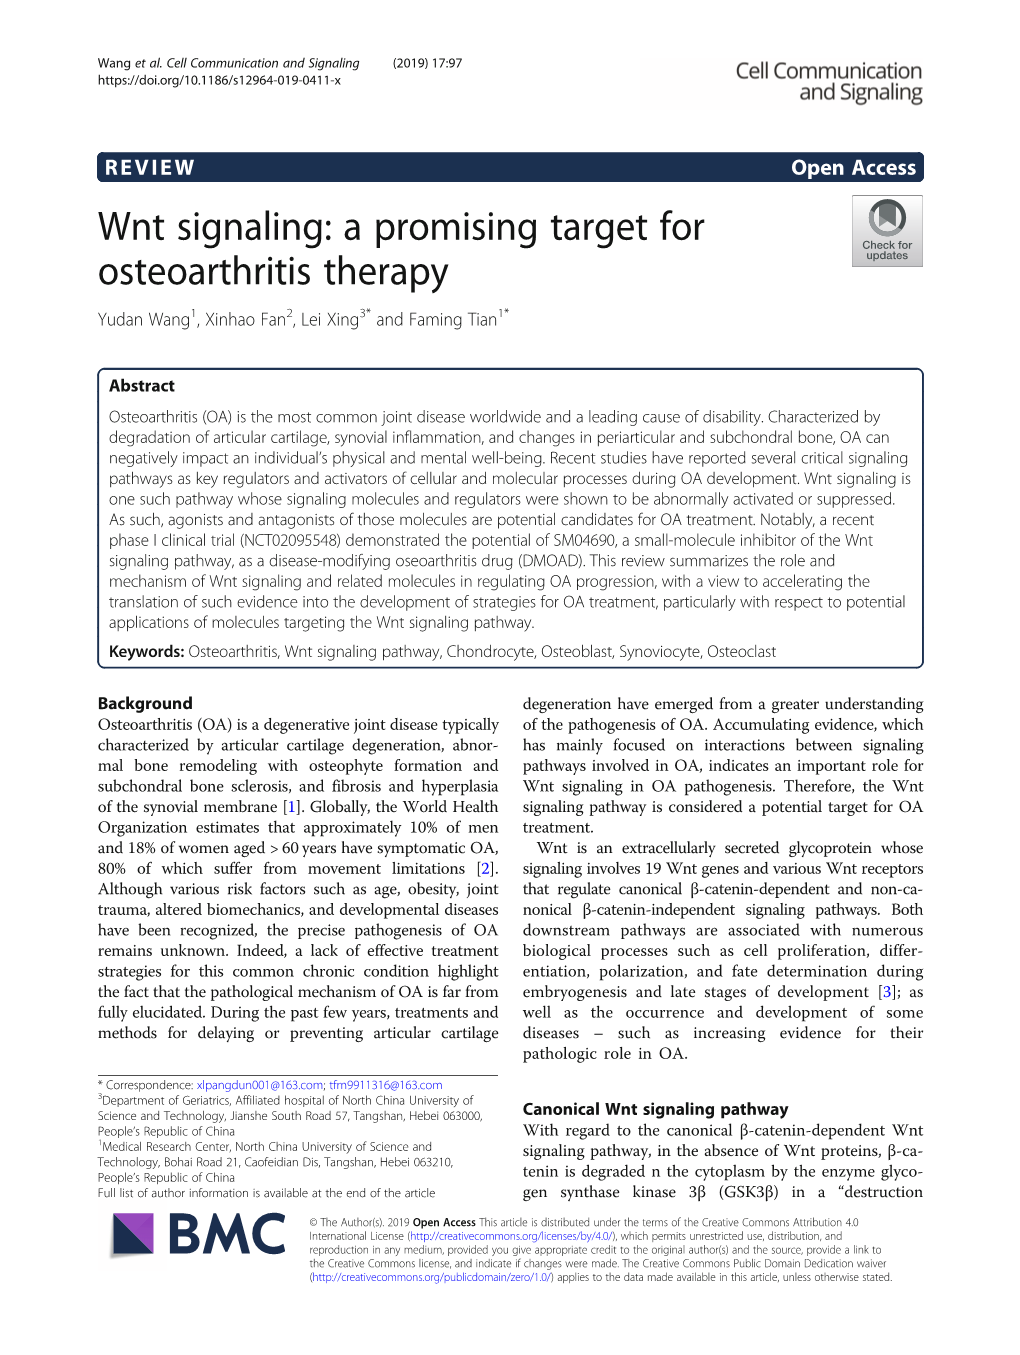 Wnt Signaling: a Promising Target for Osteoarthritis Therapy Yudan Wang1, Xinhao Fan2, Lei Xing3* and Faming Tian1*